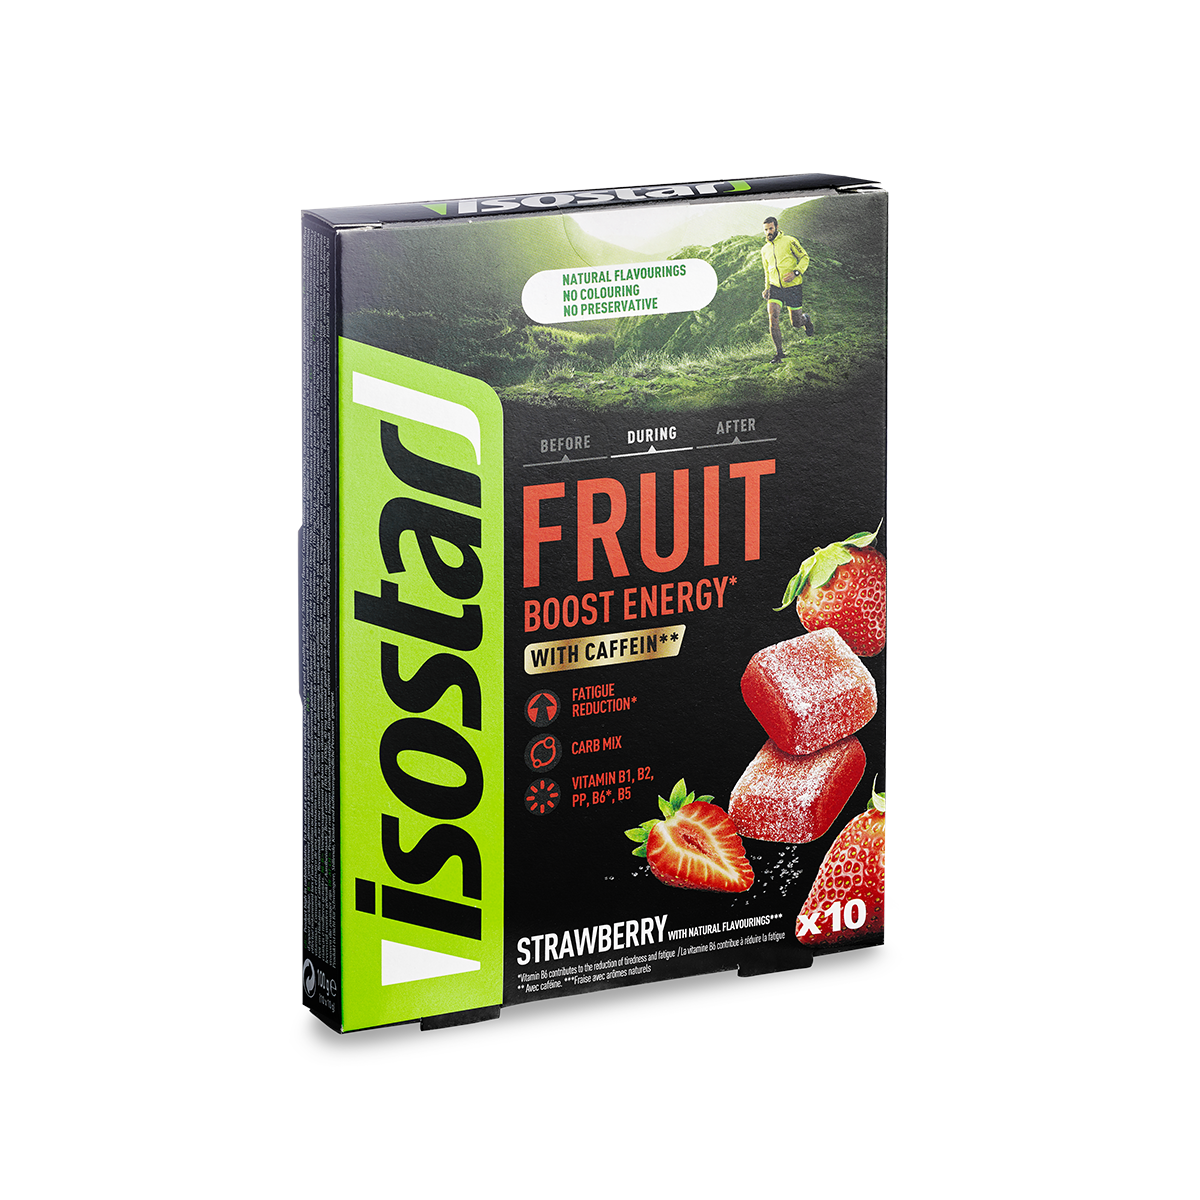  Isostar Energy Fruit Boost - Energy Snack